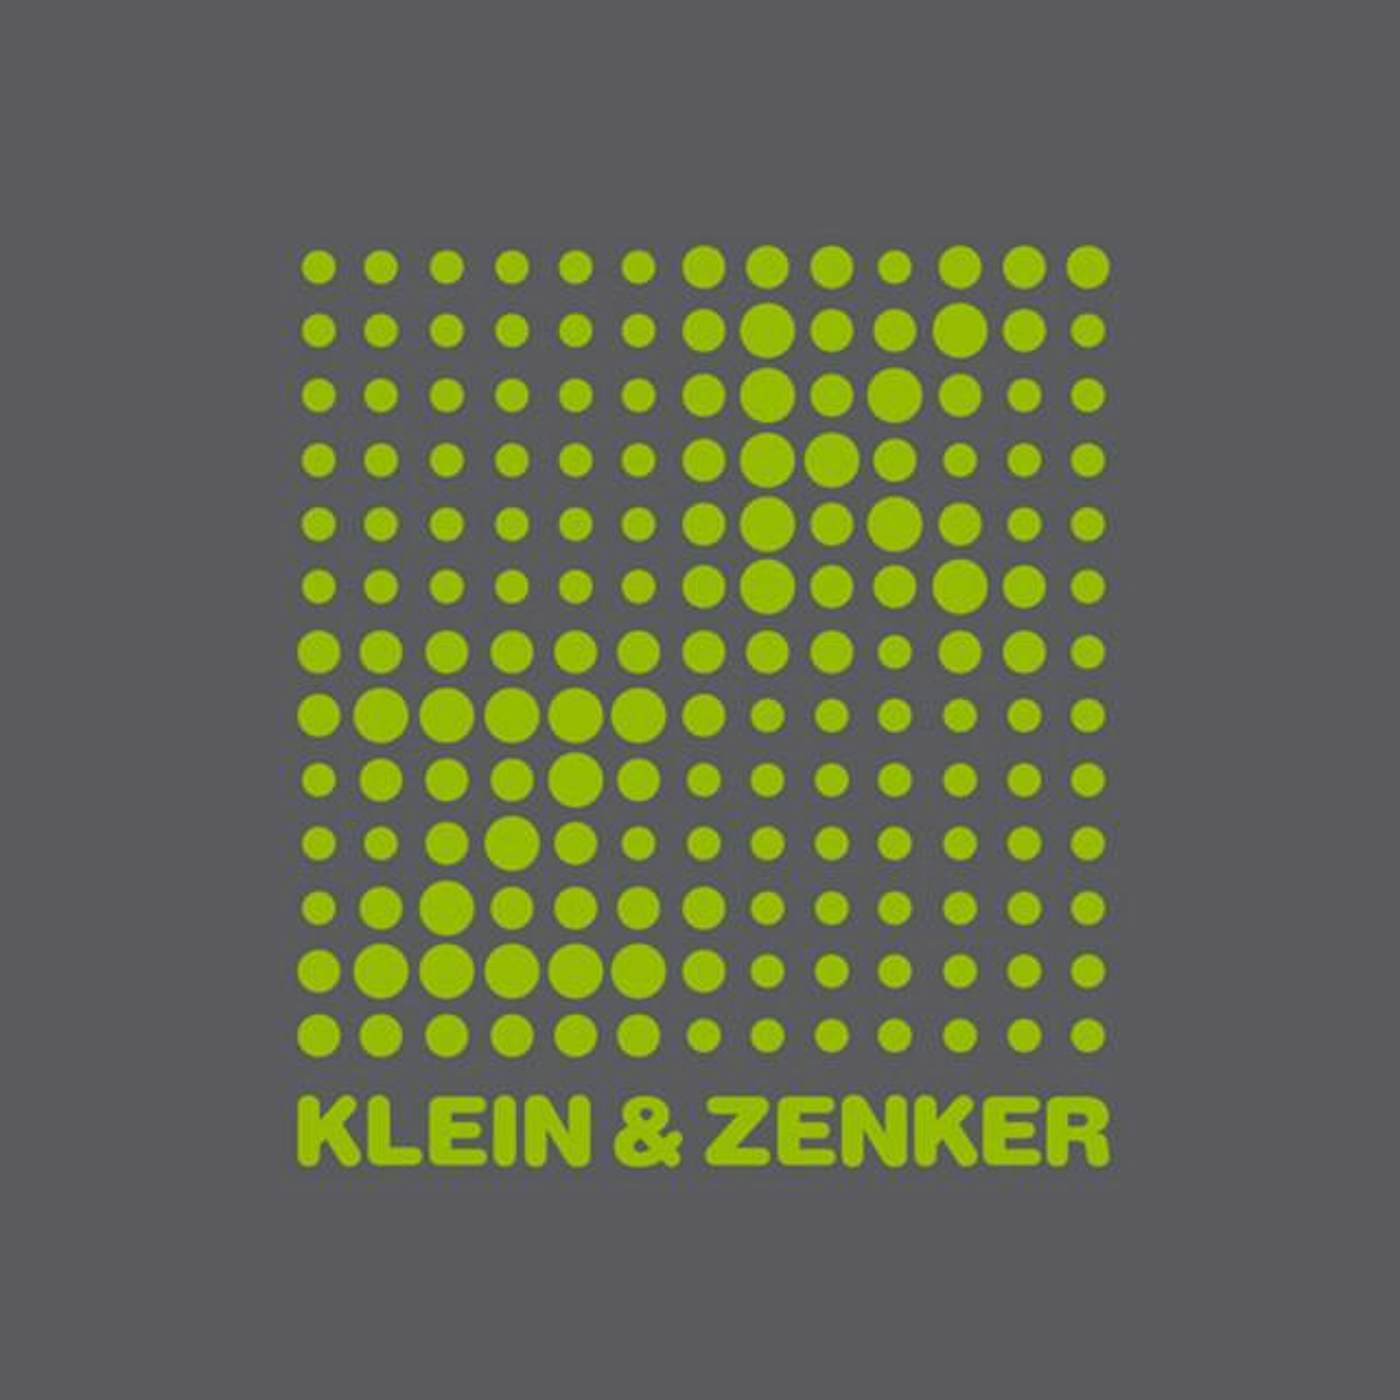 Klein & Zenker